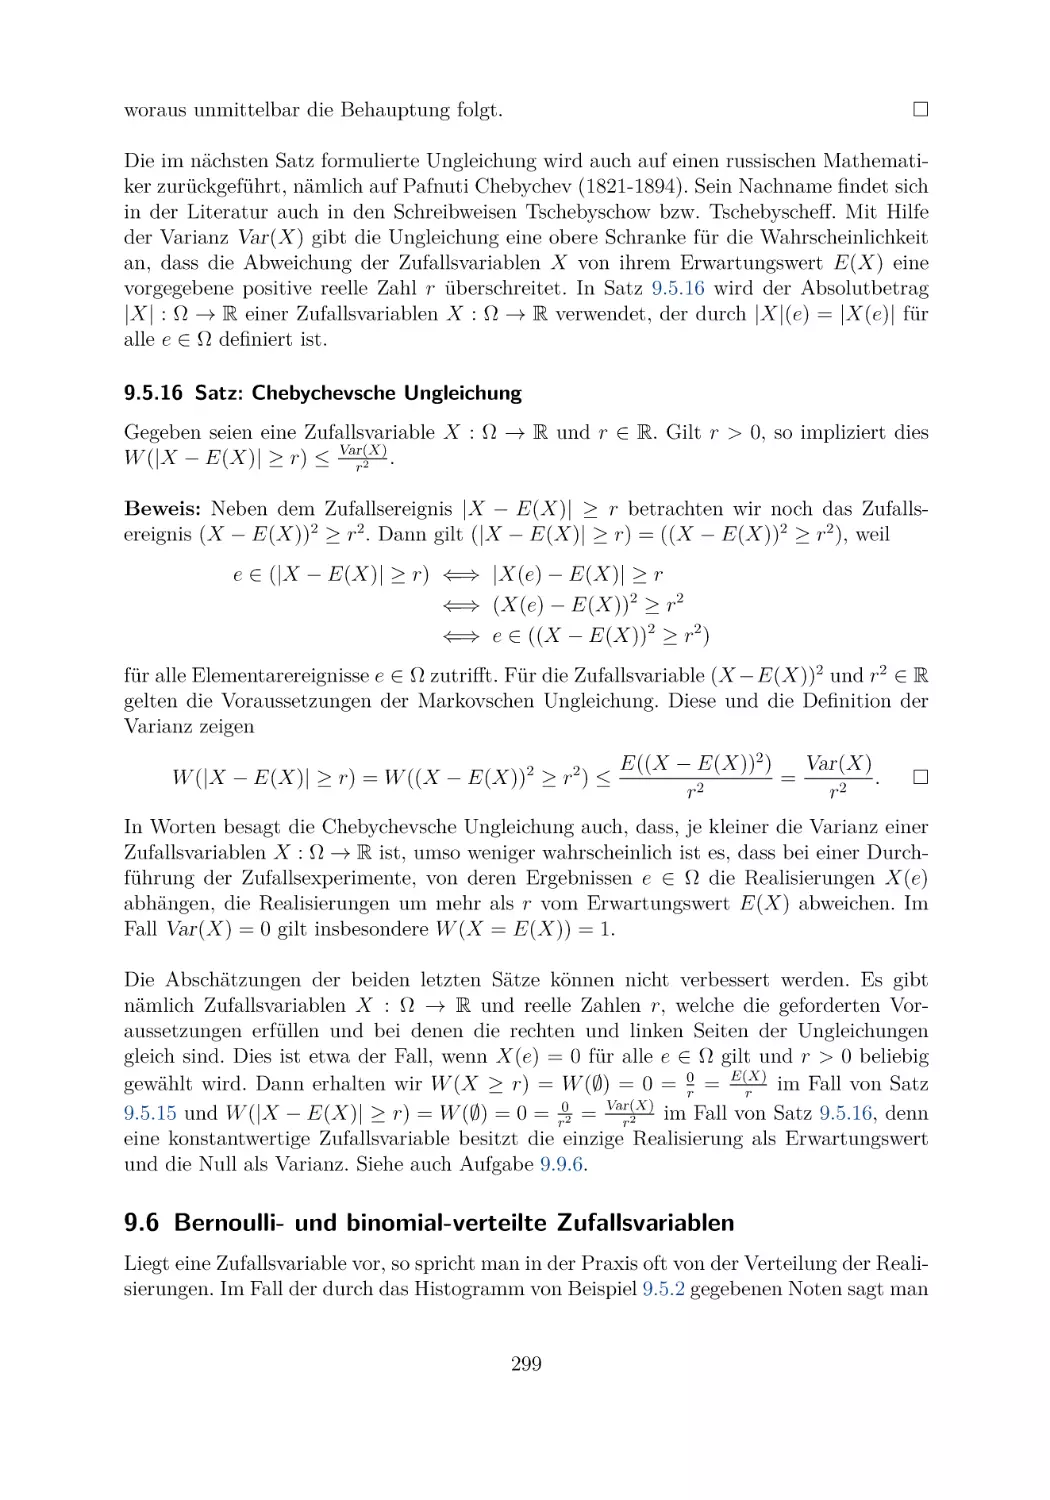 9.5.16 Satz
9.6 Bernoulli- und binomial-verteilte Zufallsvariablen